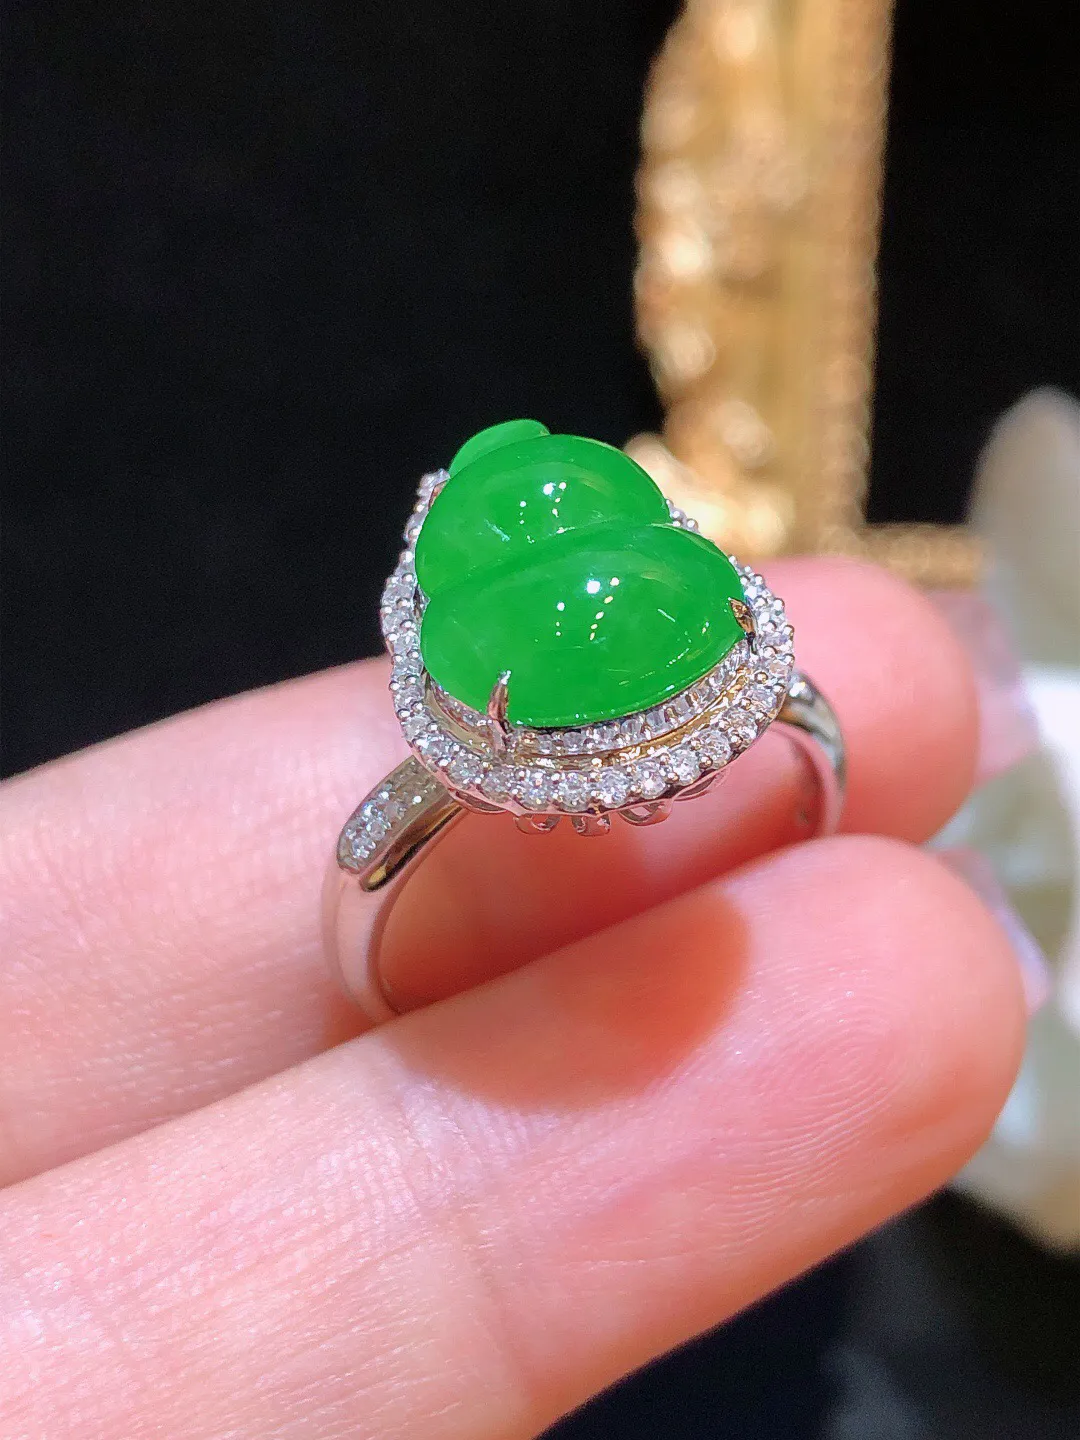 翡翠冰绿葫芦戒指 雕工精美 颜色细腻 饱满圆润